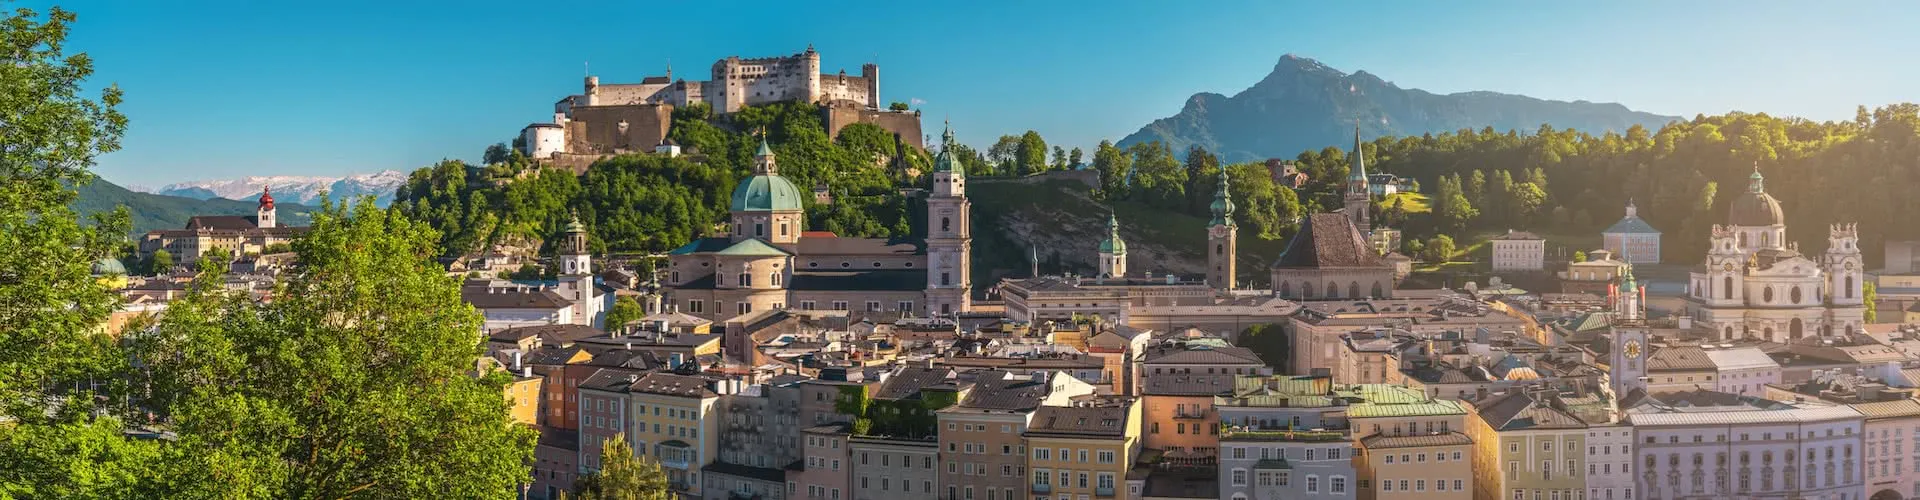 Panorama Bild von Salzburg